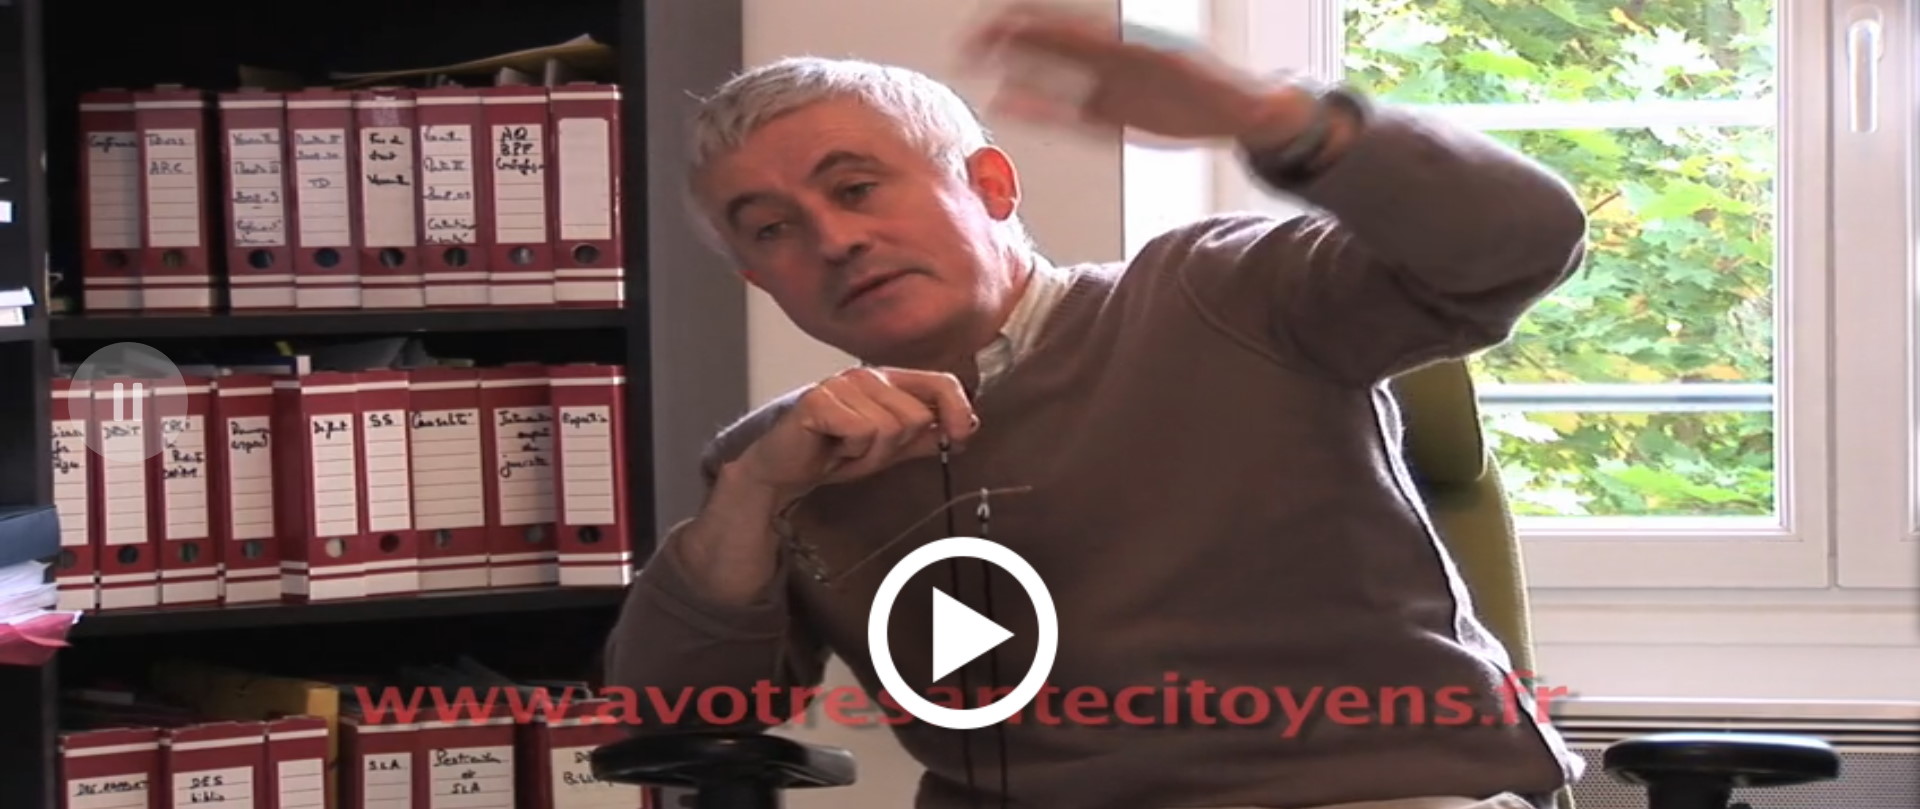 Le choix éthique - Interview Dr Marc Girard - avotresantecitoyens.fr